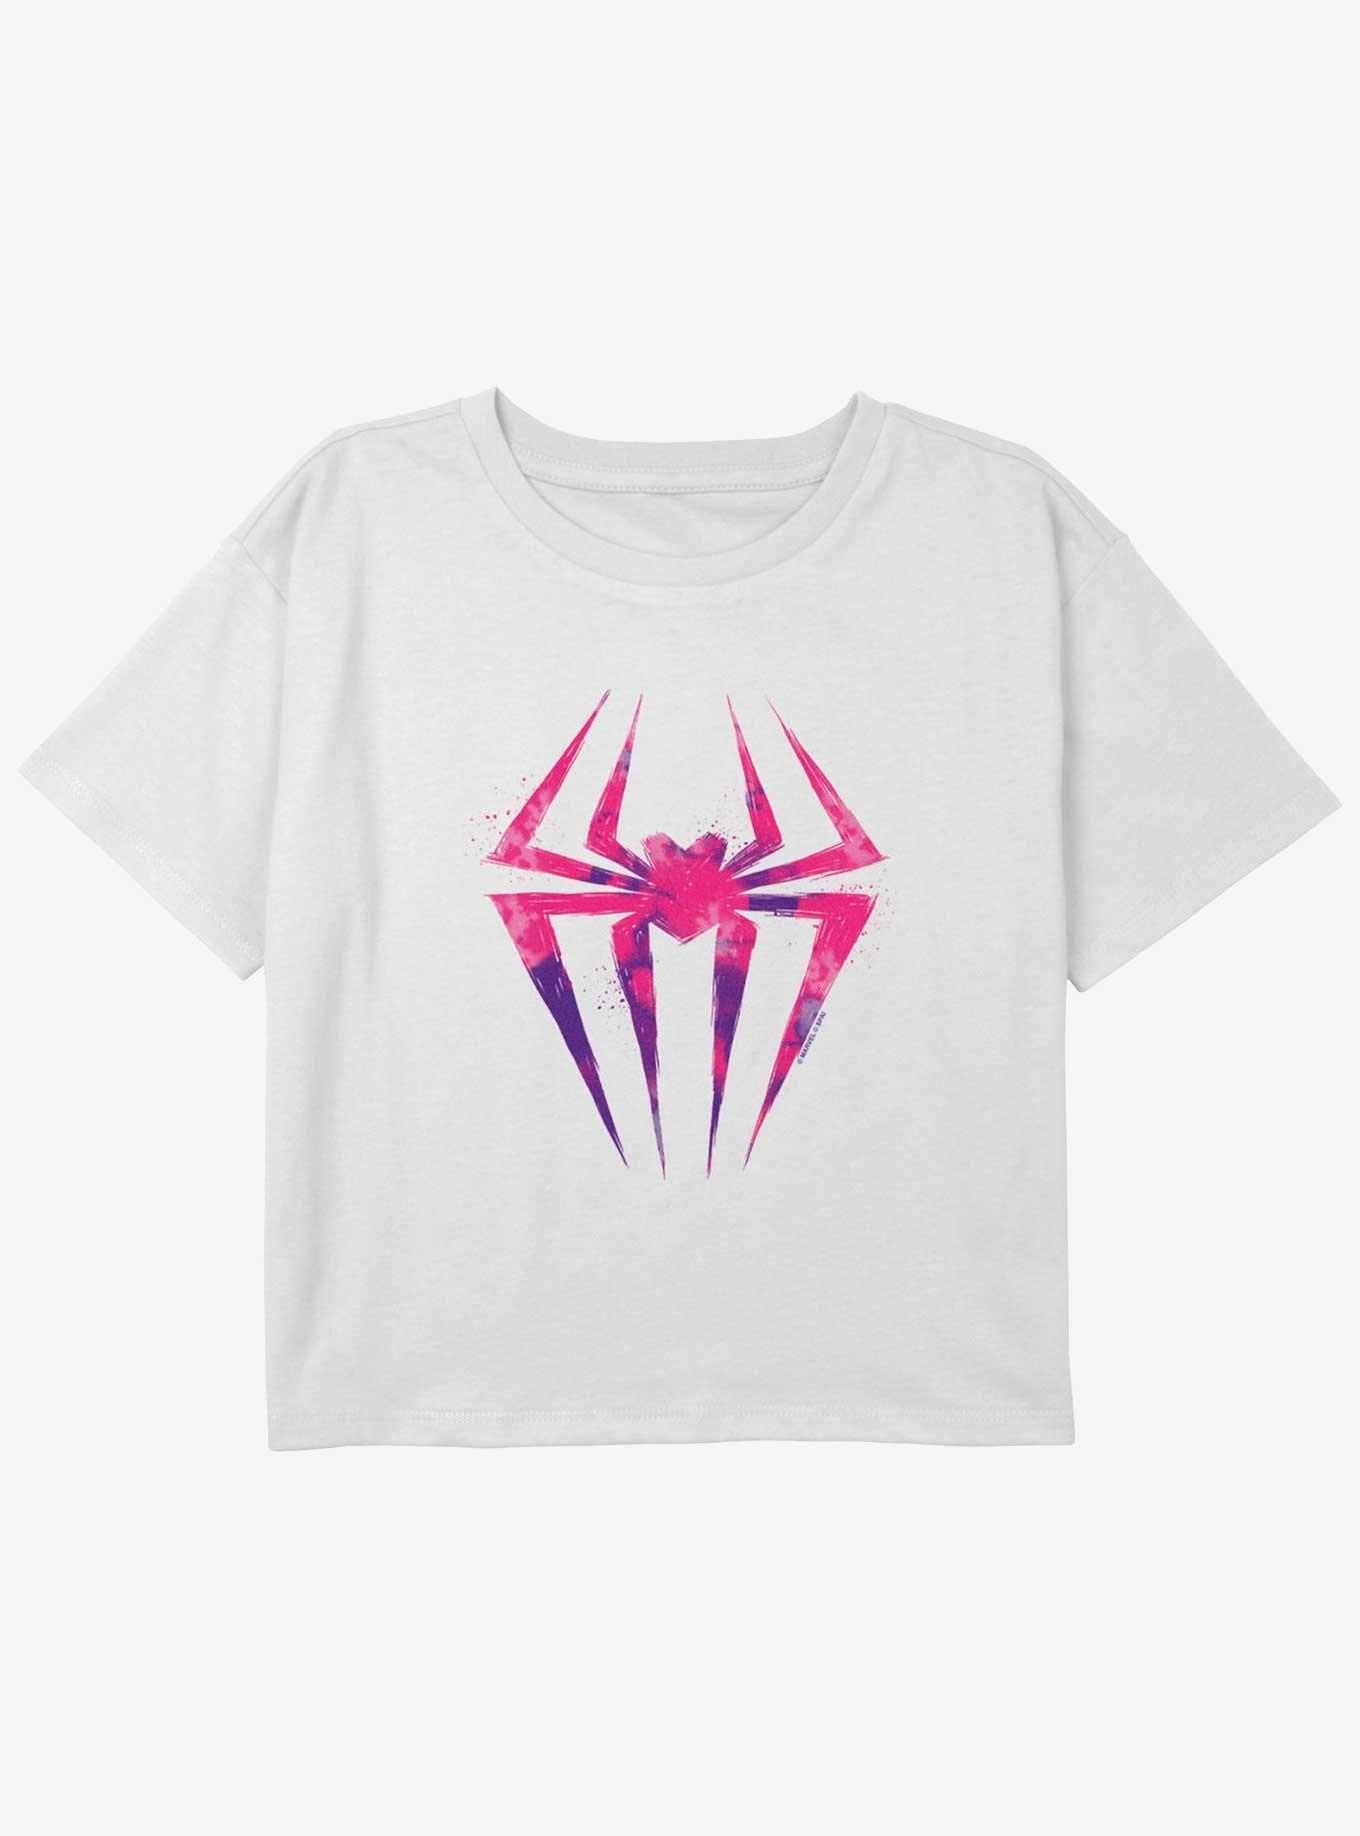 Marvel Spider-Man Spider-Gwen Icon Girls Youth Crop T-Shirt, WHITE, hi-res